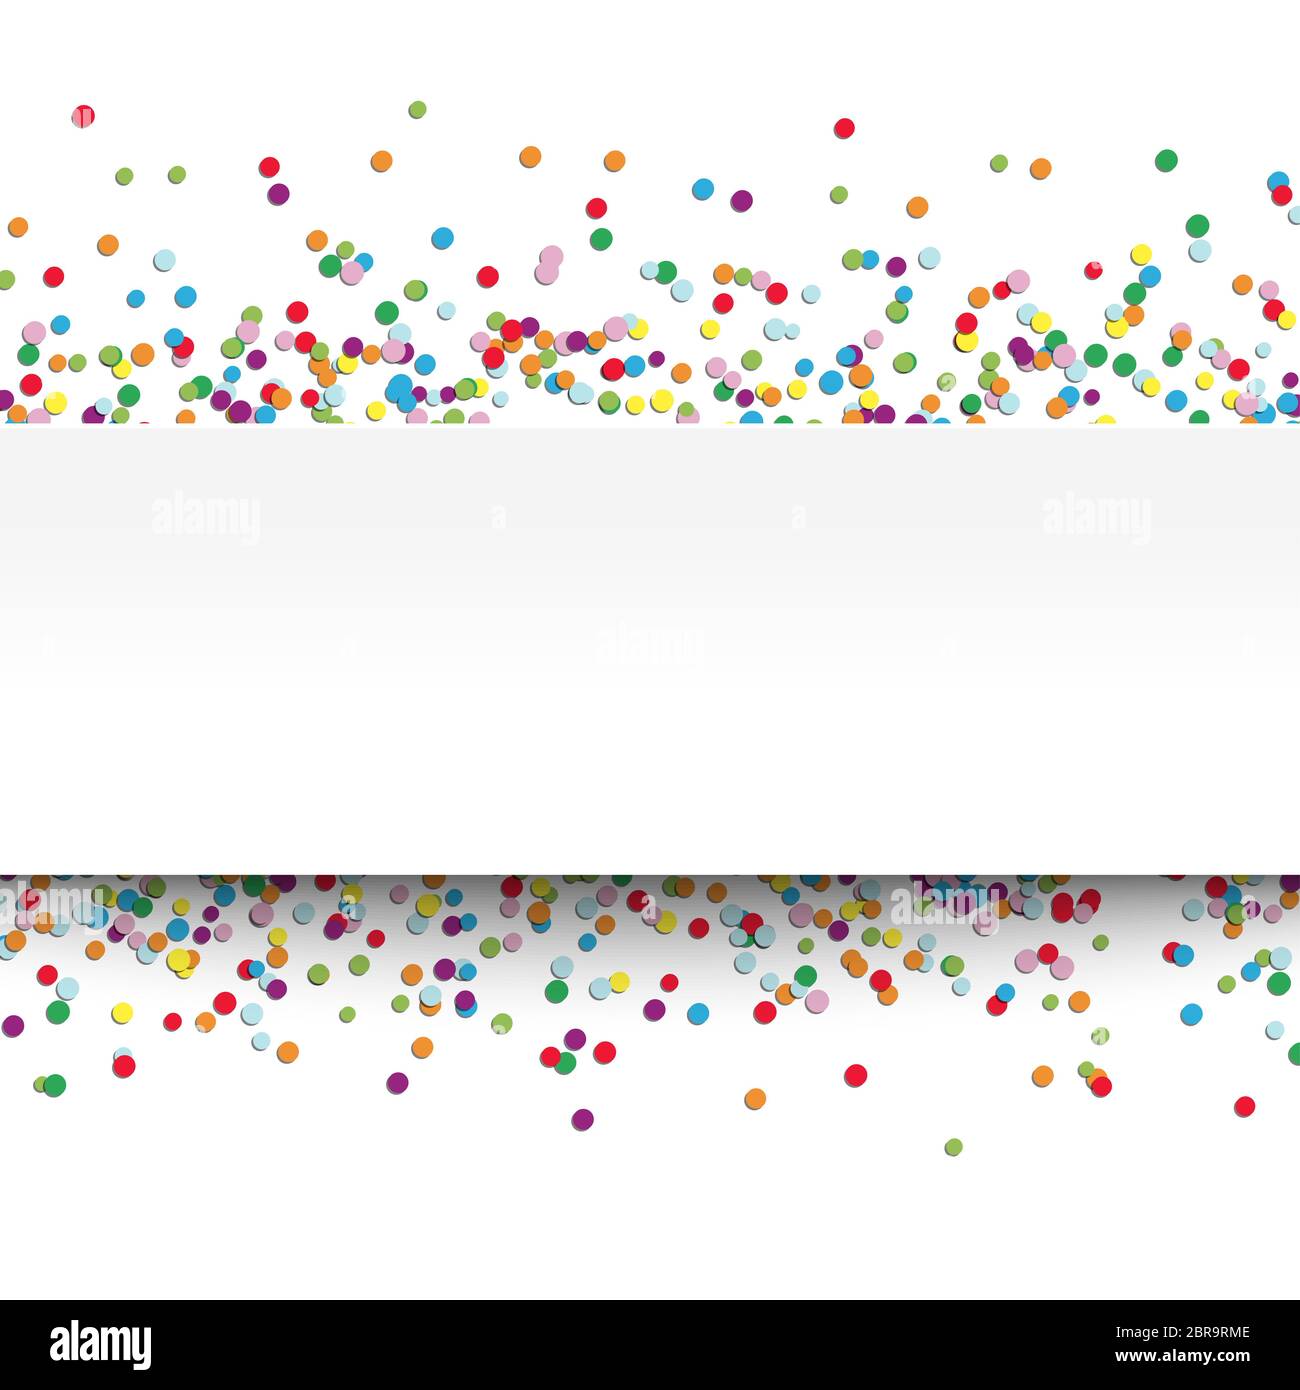 Vector illustration de confettis multicolores avec une bannière blanche pour texte pour carnaval ou fête sur fond blanc Banque D'Images